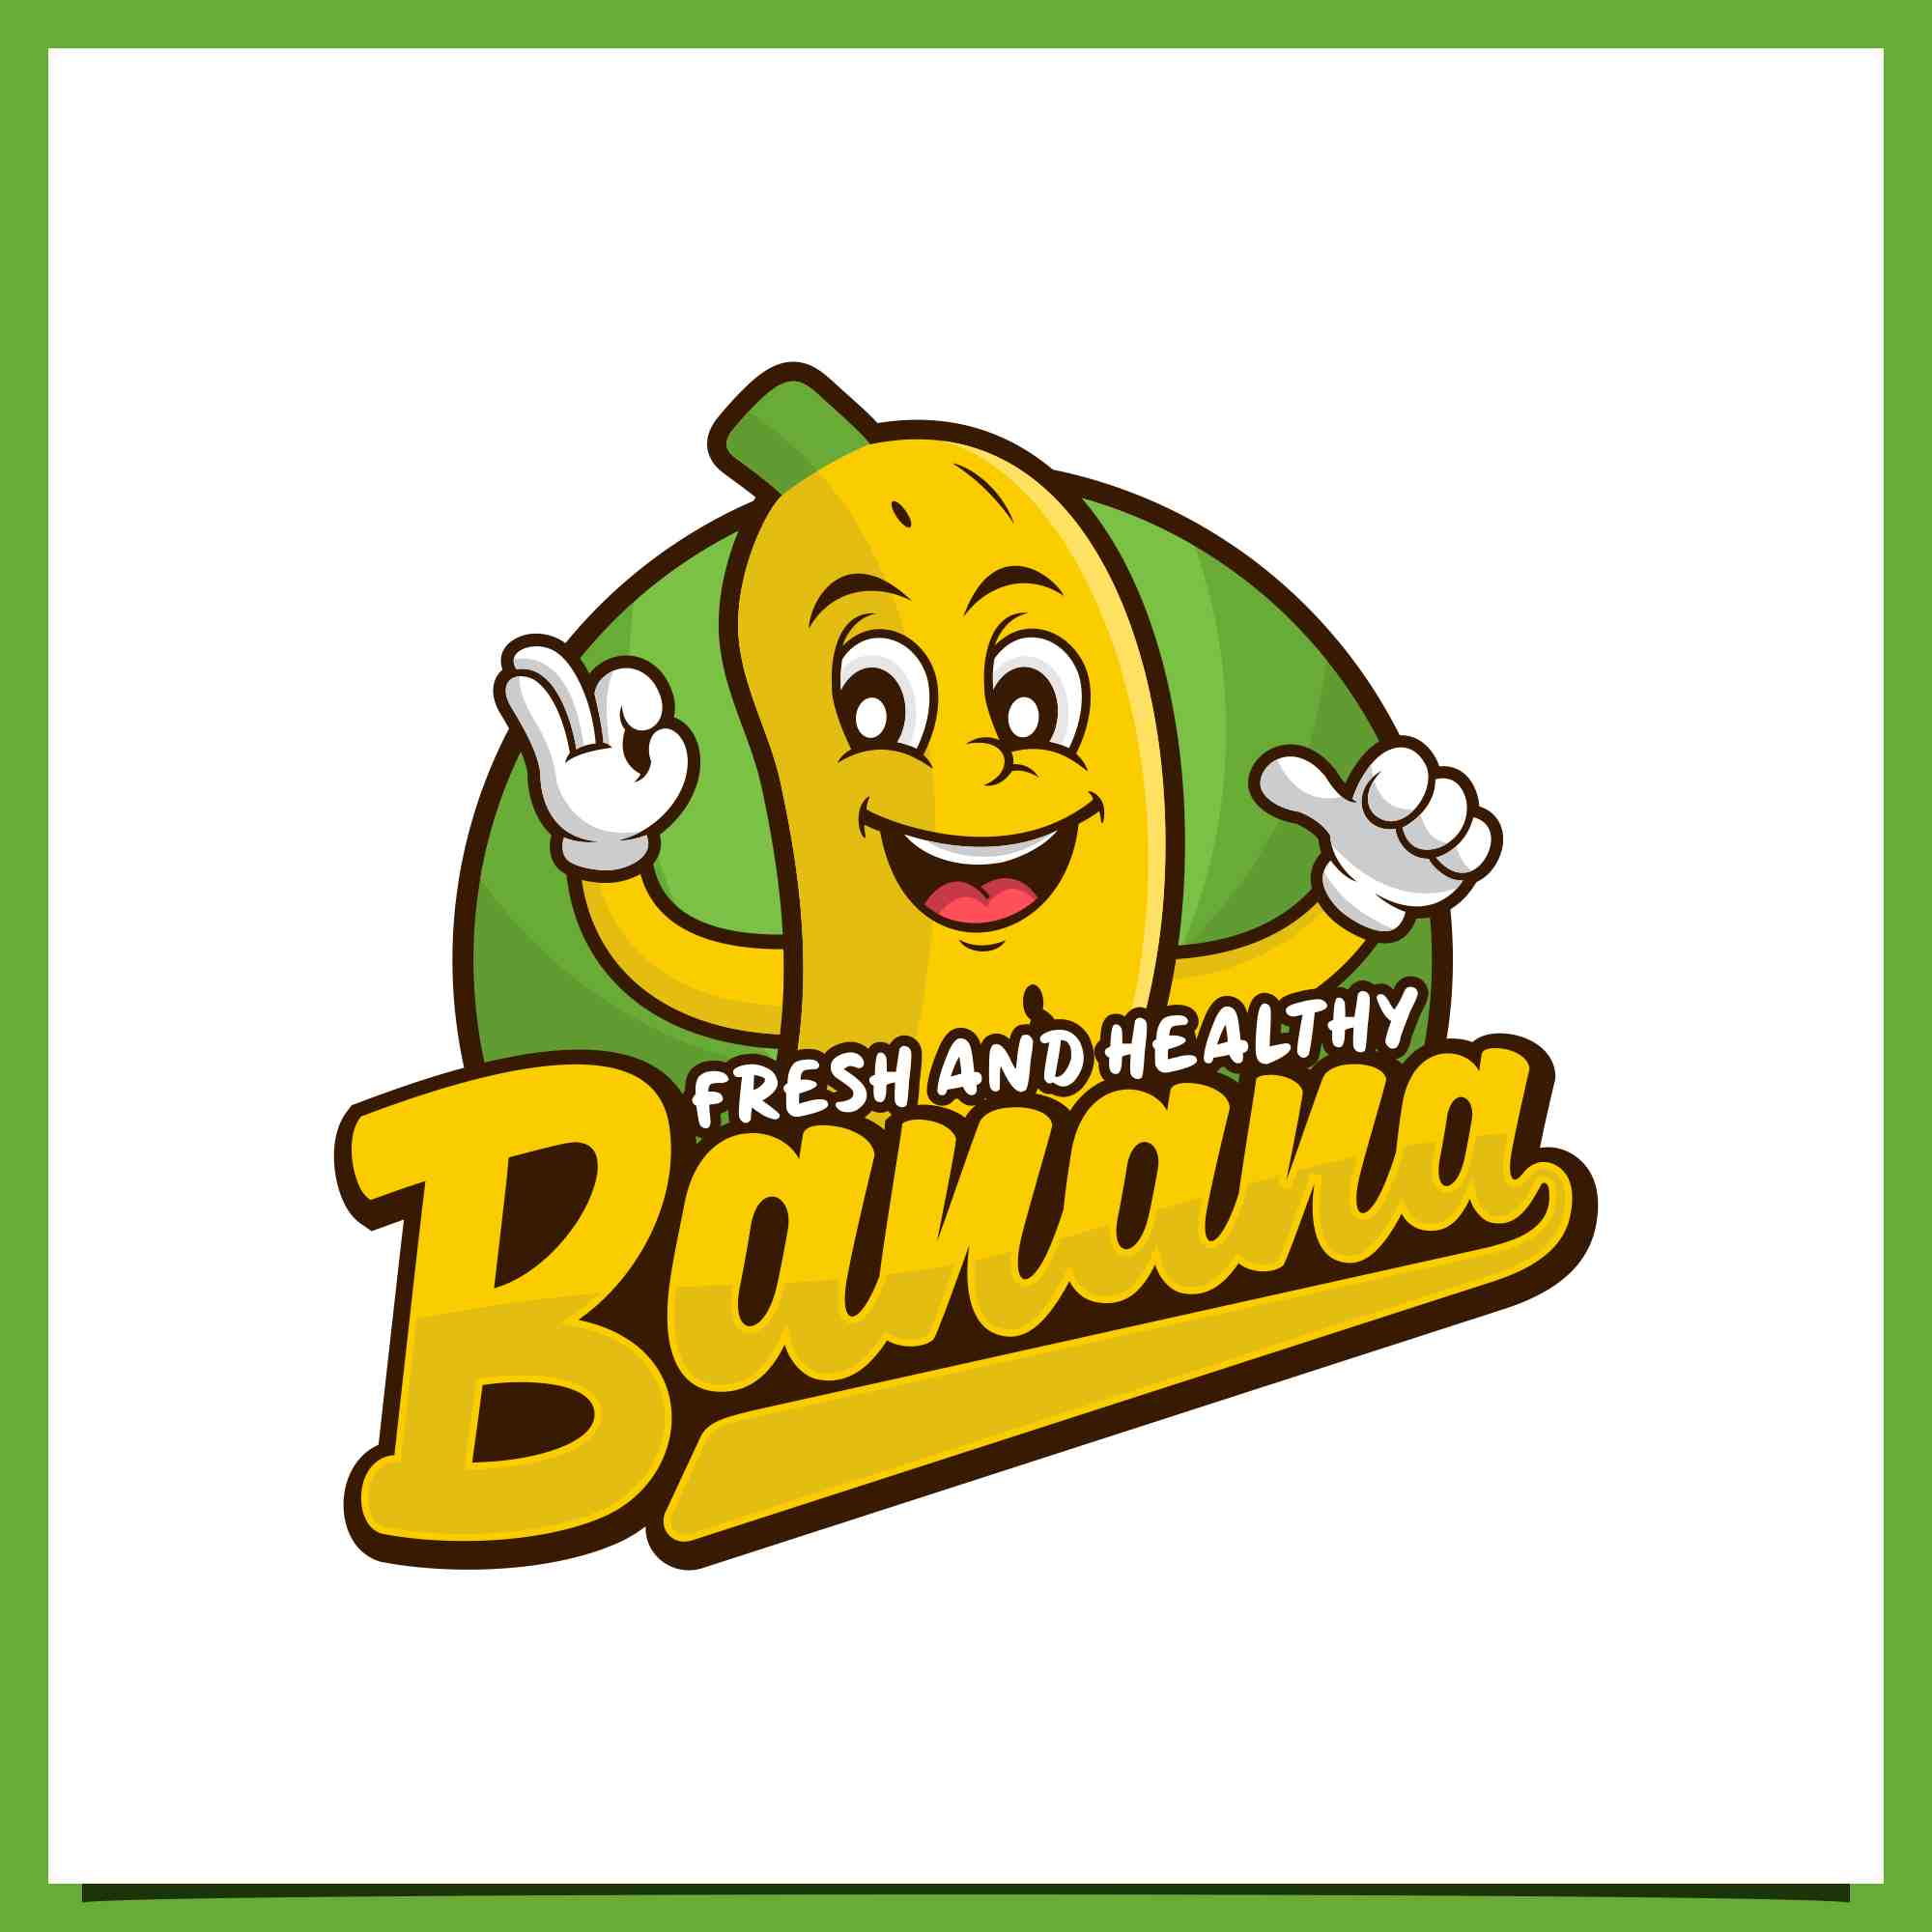 Set Banana mascot fresh and healthy Logo design - $6 preview image.